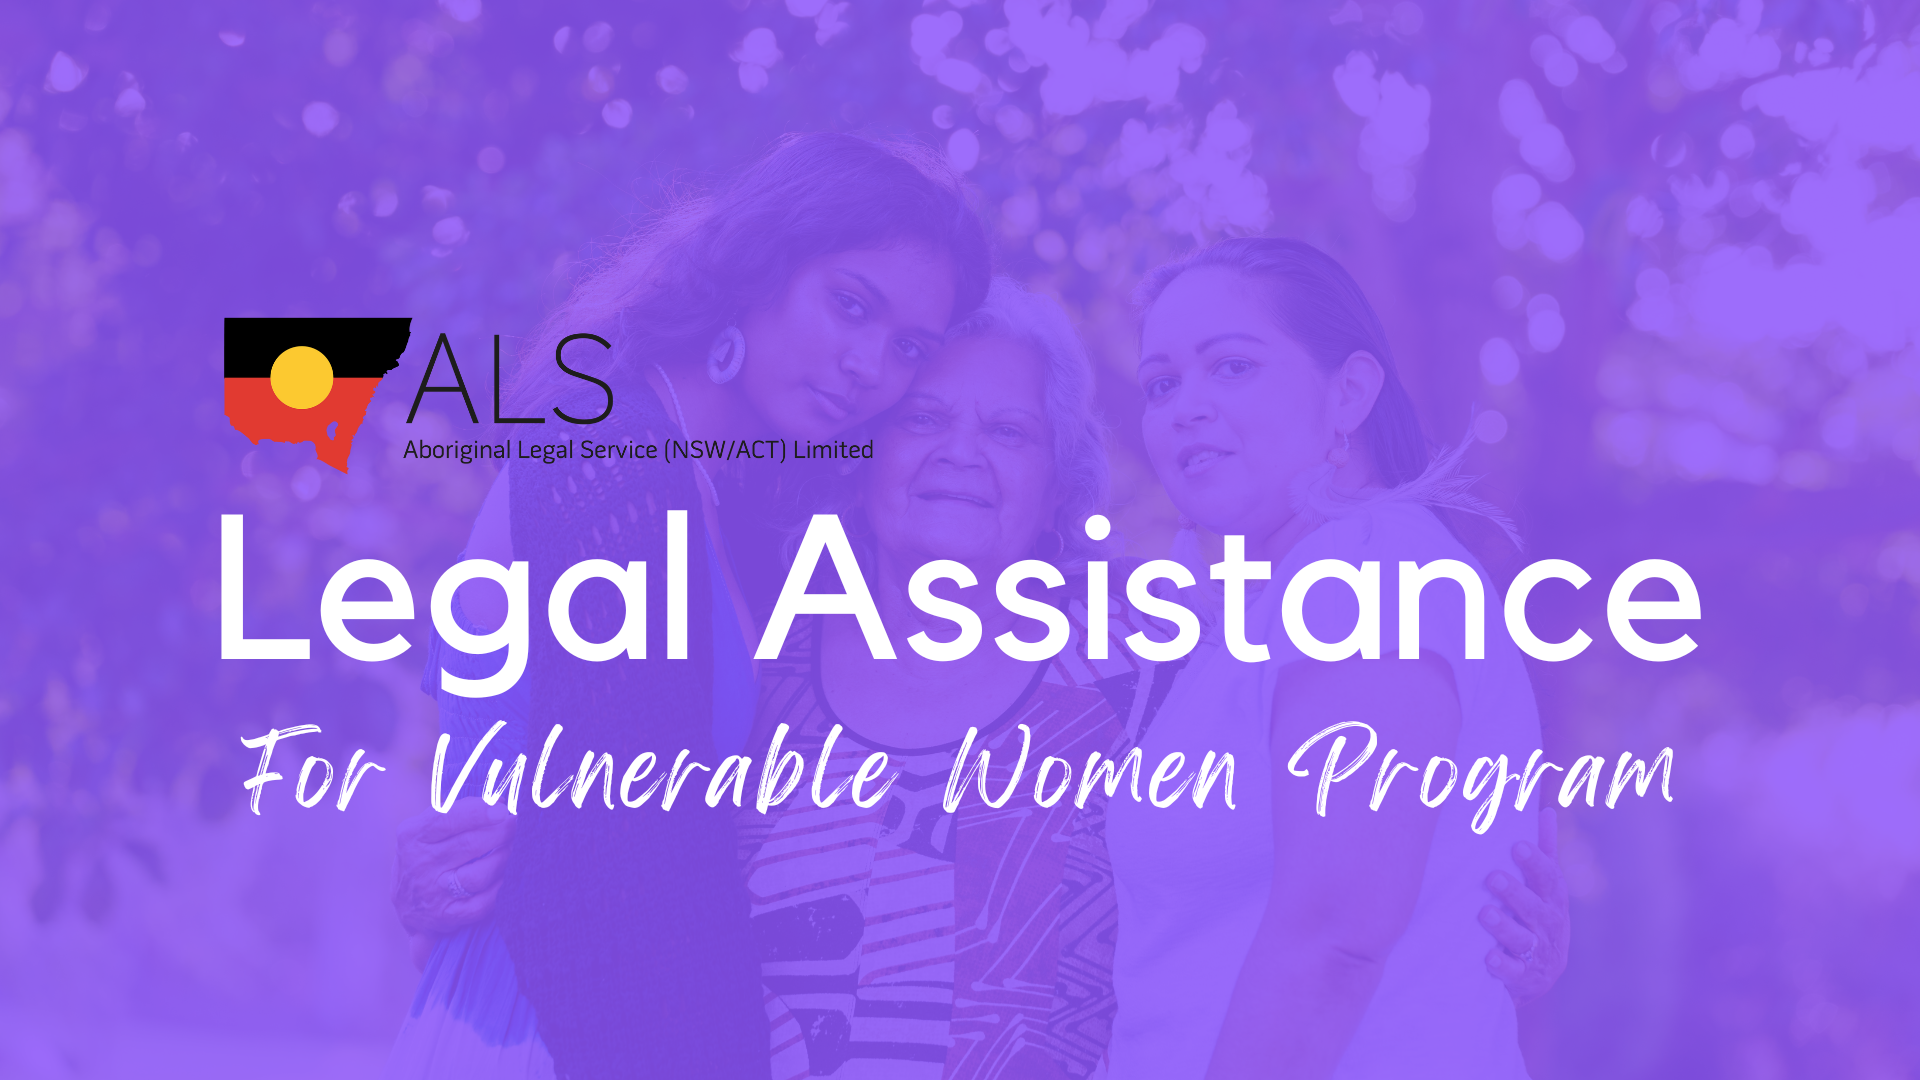 ALS Legal Assistance For Vulnerable Women Program